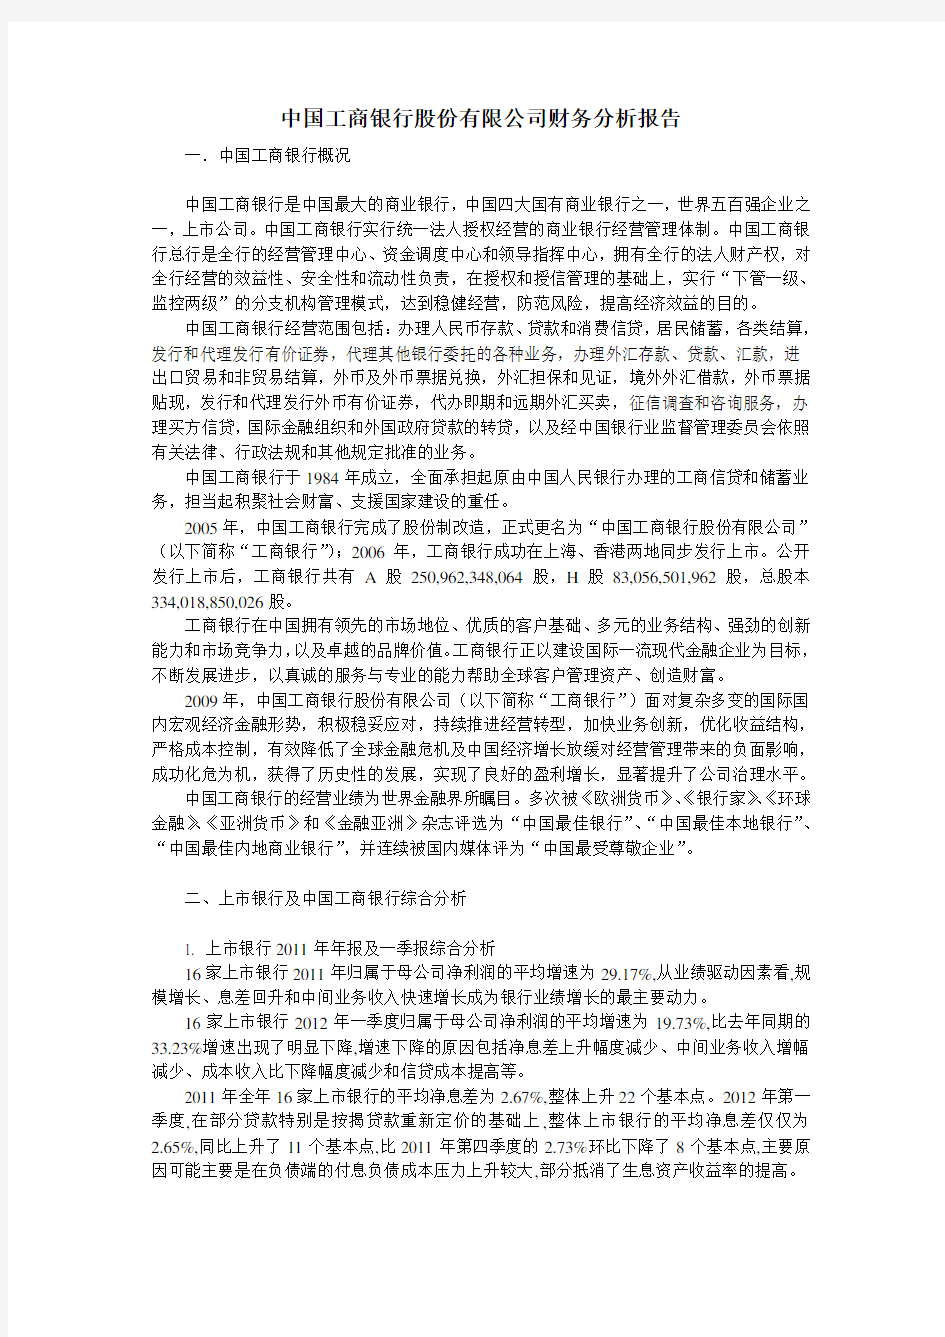 中国工商银行股份有限公司财务分析报告